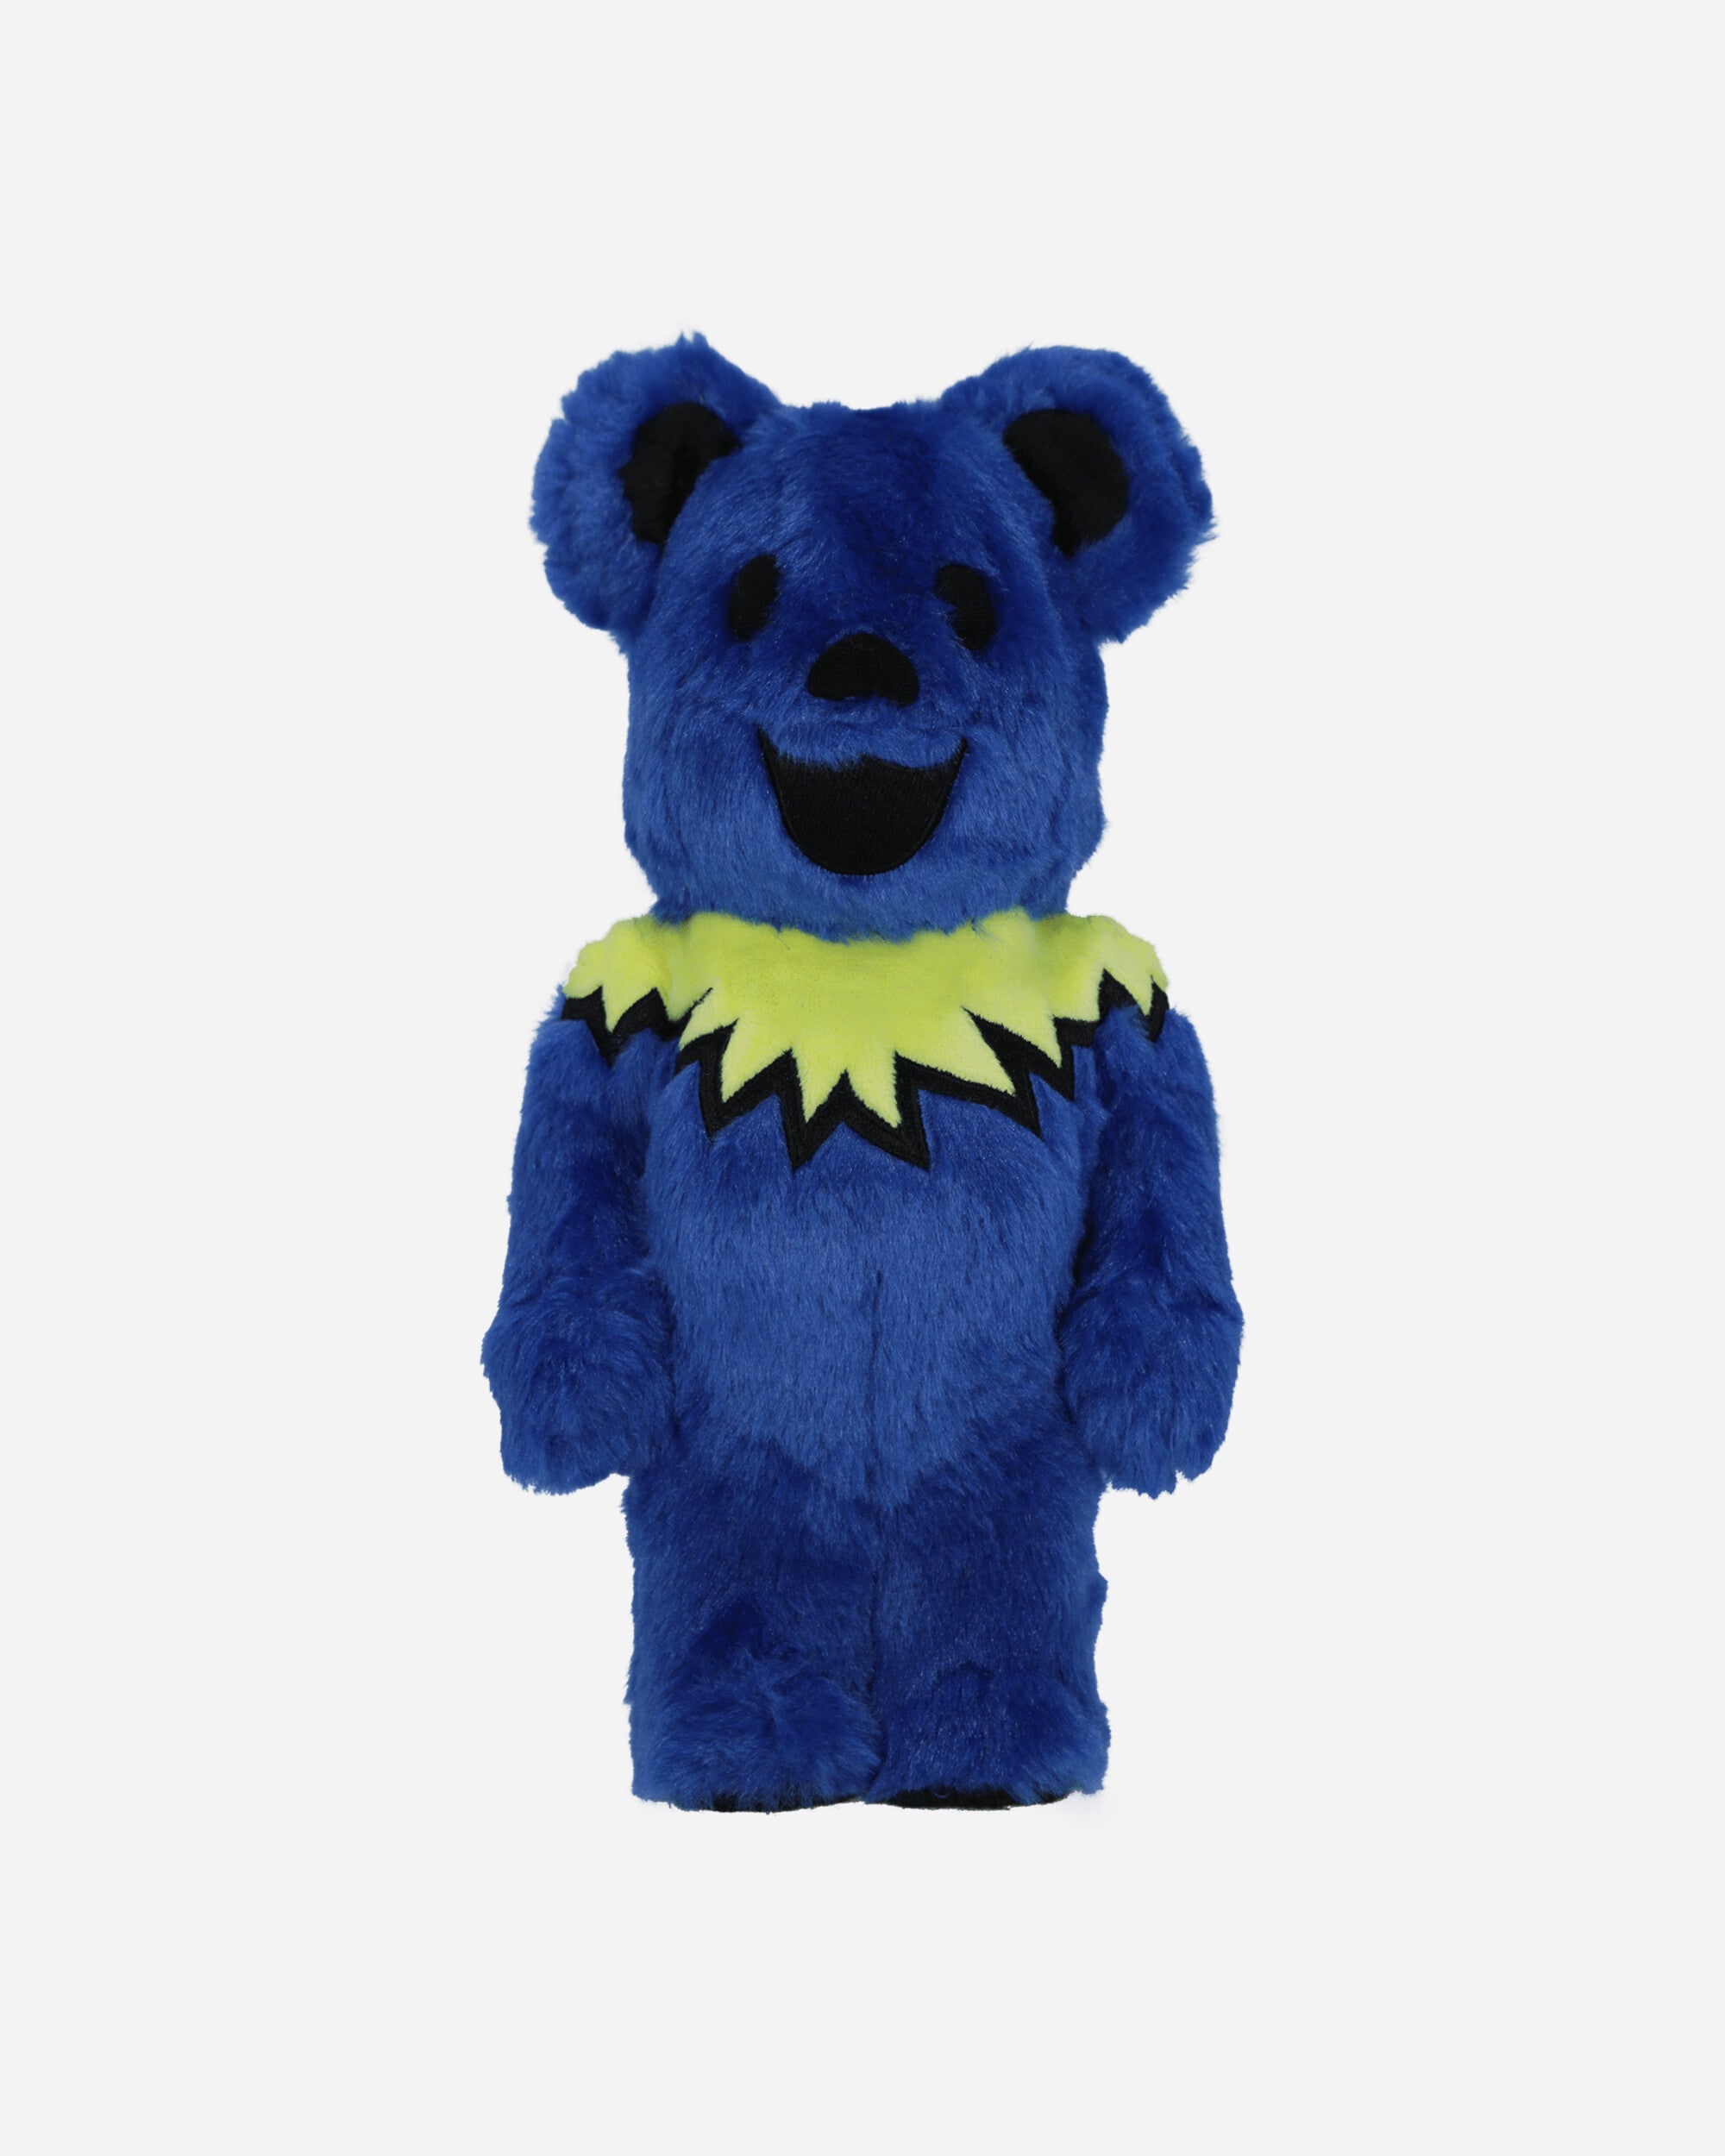 Medicom 400% Grateful Dead Dancing Bears Costume Blue Ass Home Decor Toys 400DANCEBLUE ASS